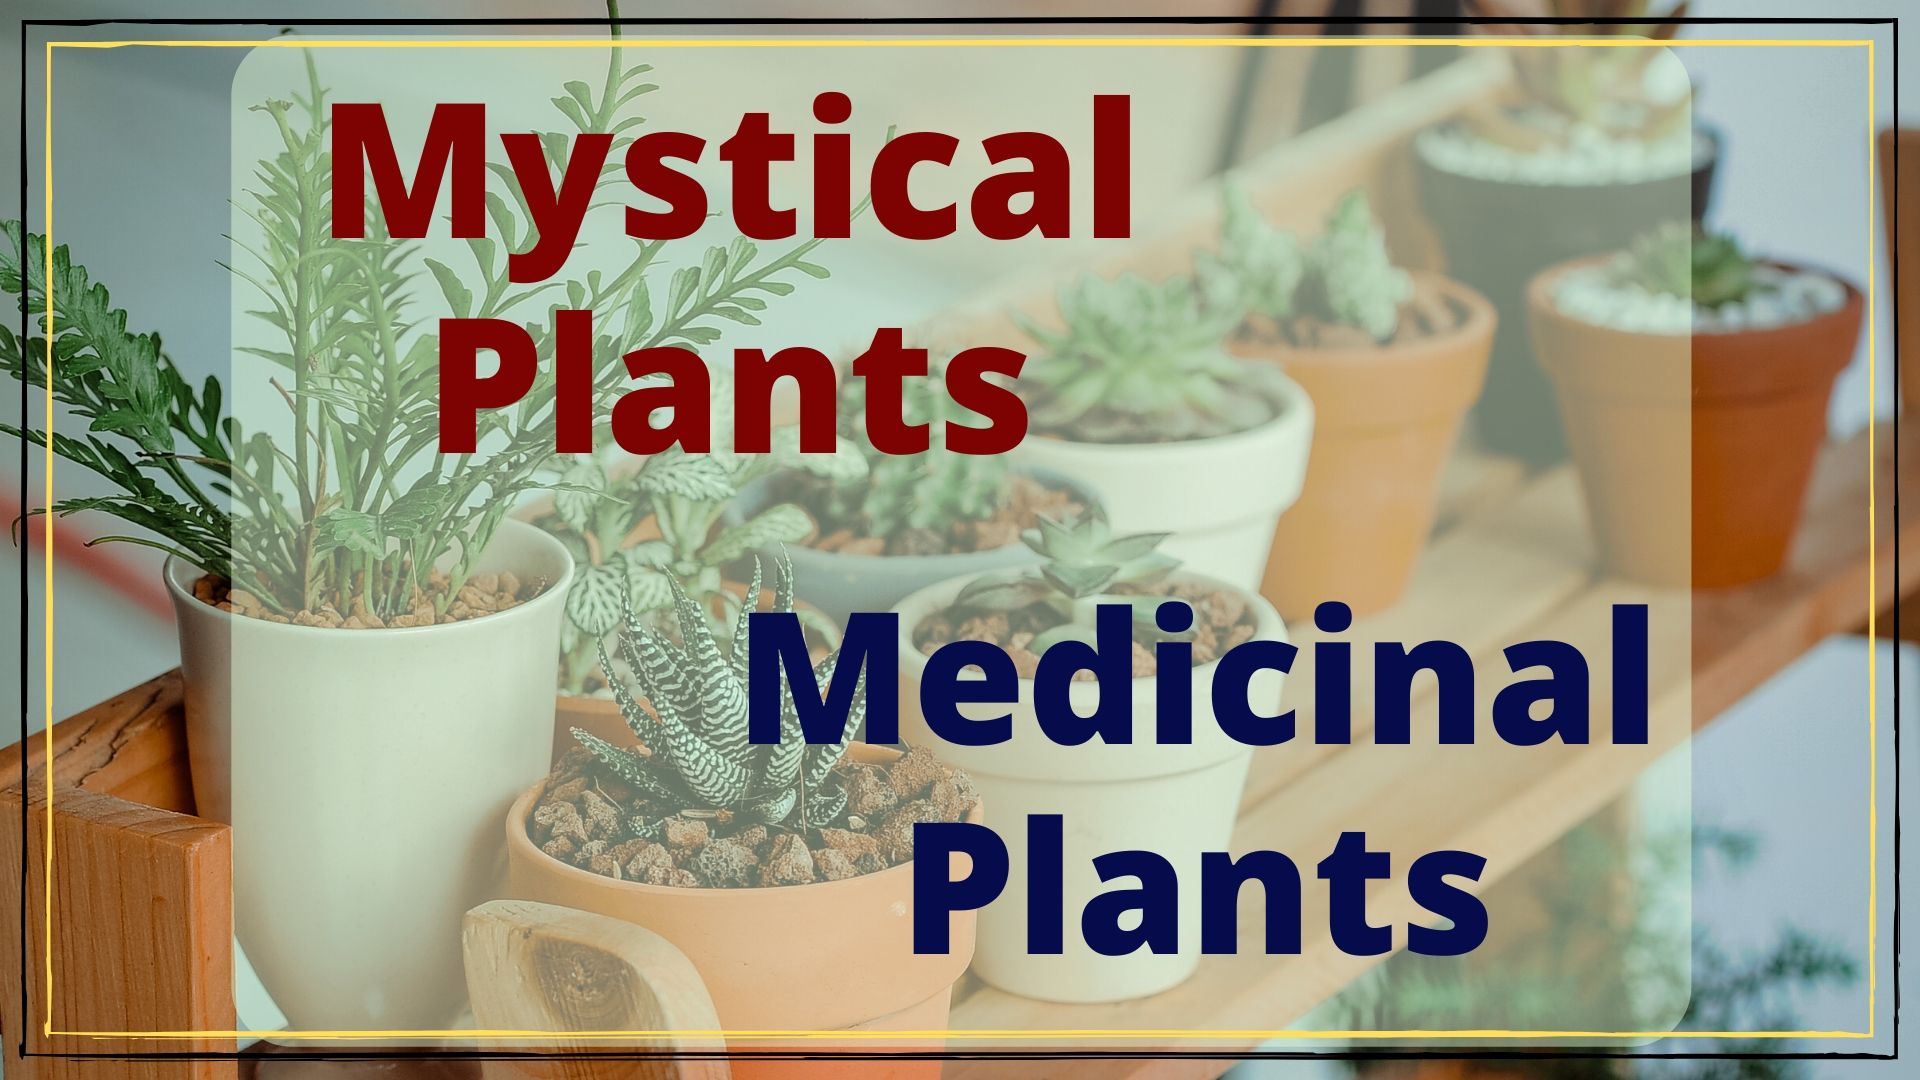 Mystical Plants and Medicinal Plants